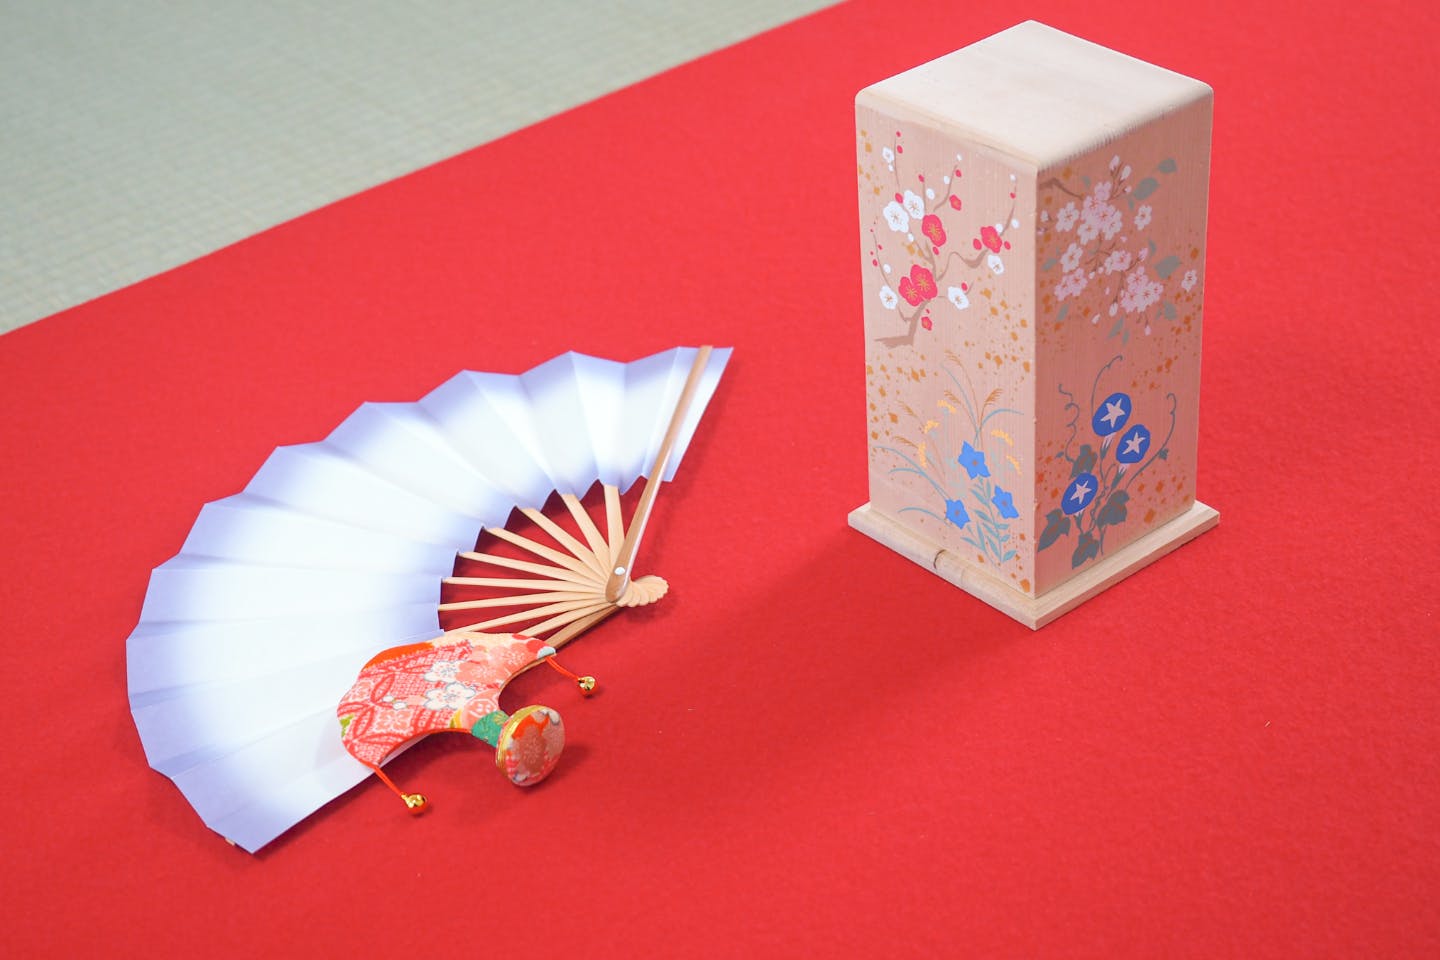 【京都・中京・投扇興体験】扇と蝶の形で採点。扇子の老舗で楽しむ、優雅なお遊び